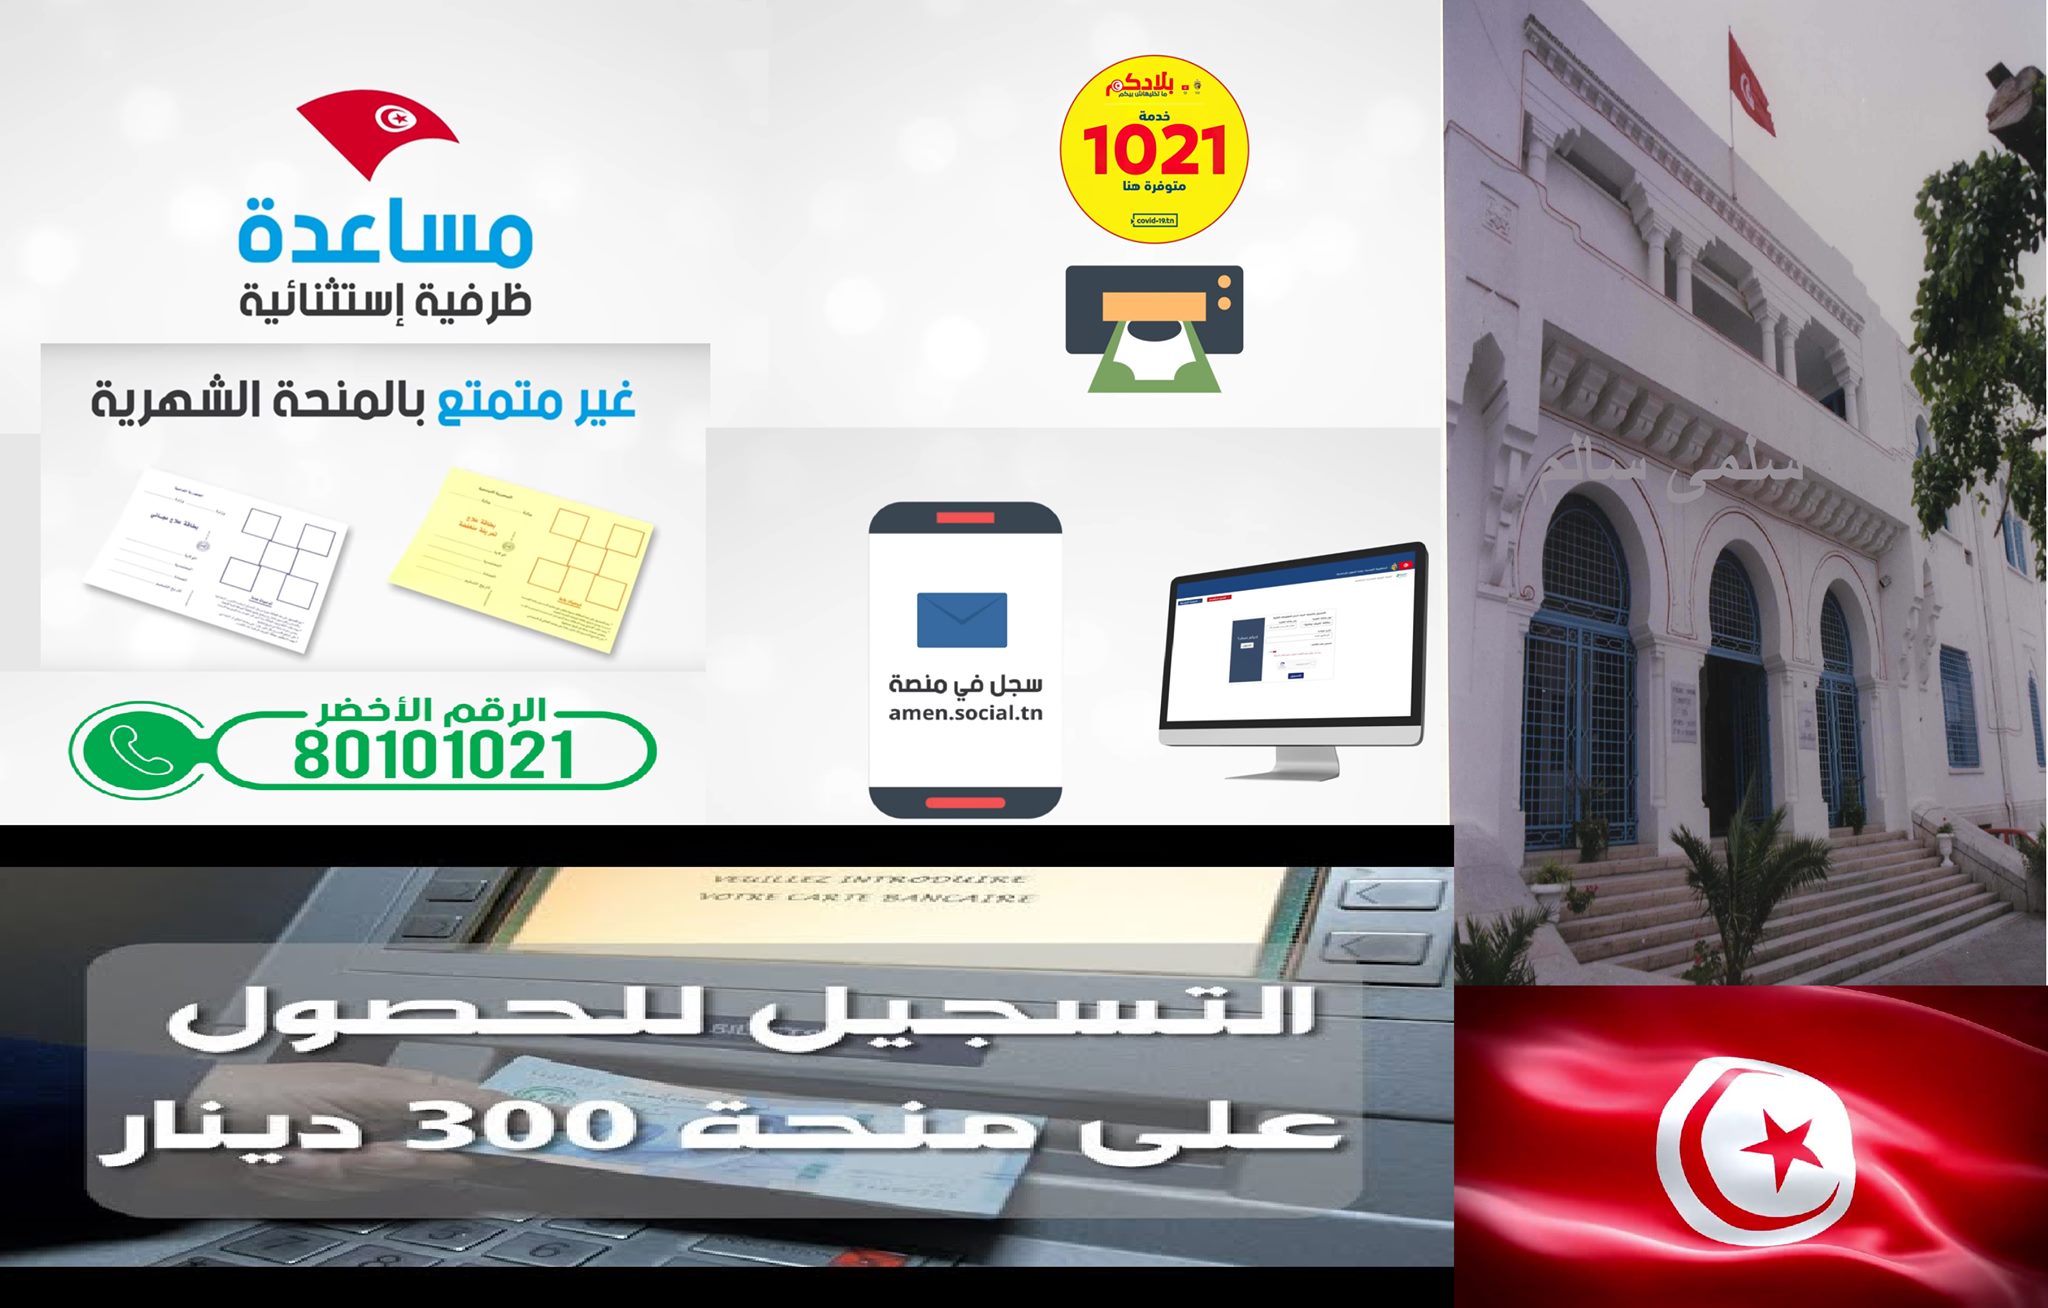 رابط تسجيل المساعدات الاجتماعية amen.social.tn 2021 بالعربية صرف منحة 300 دينار بحساب افتراضي 1021